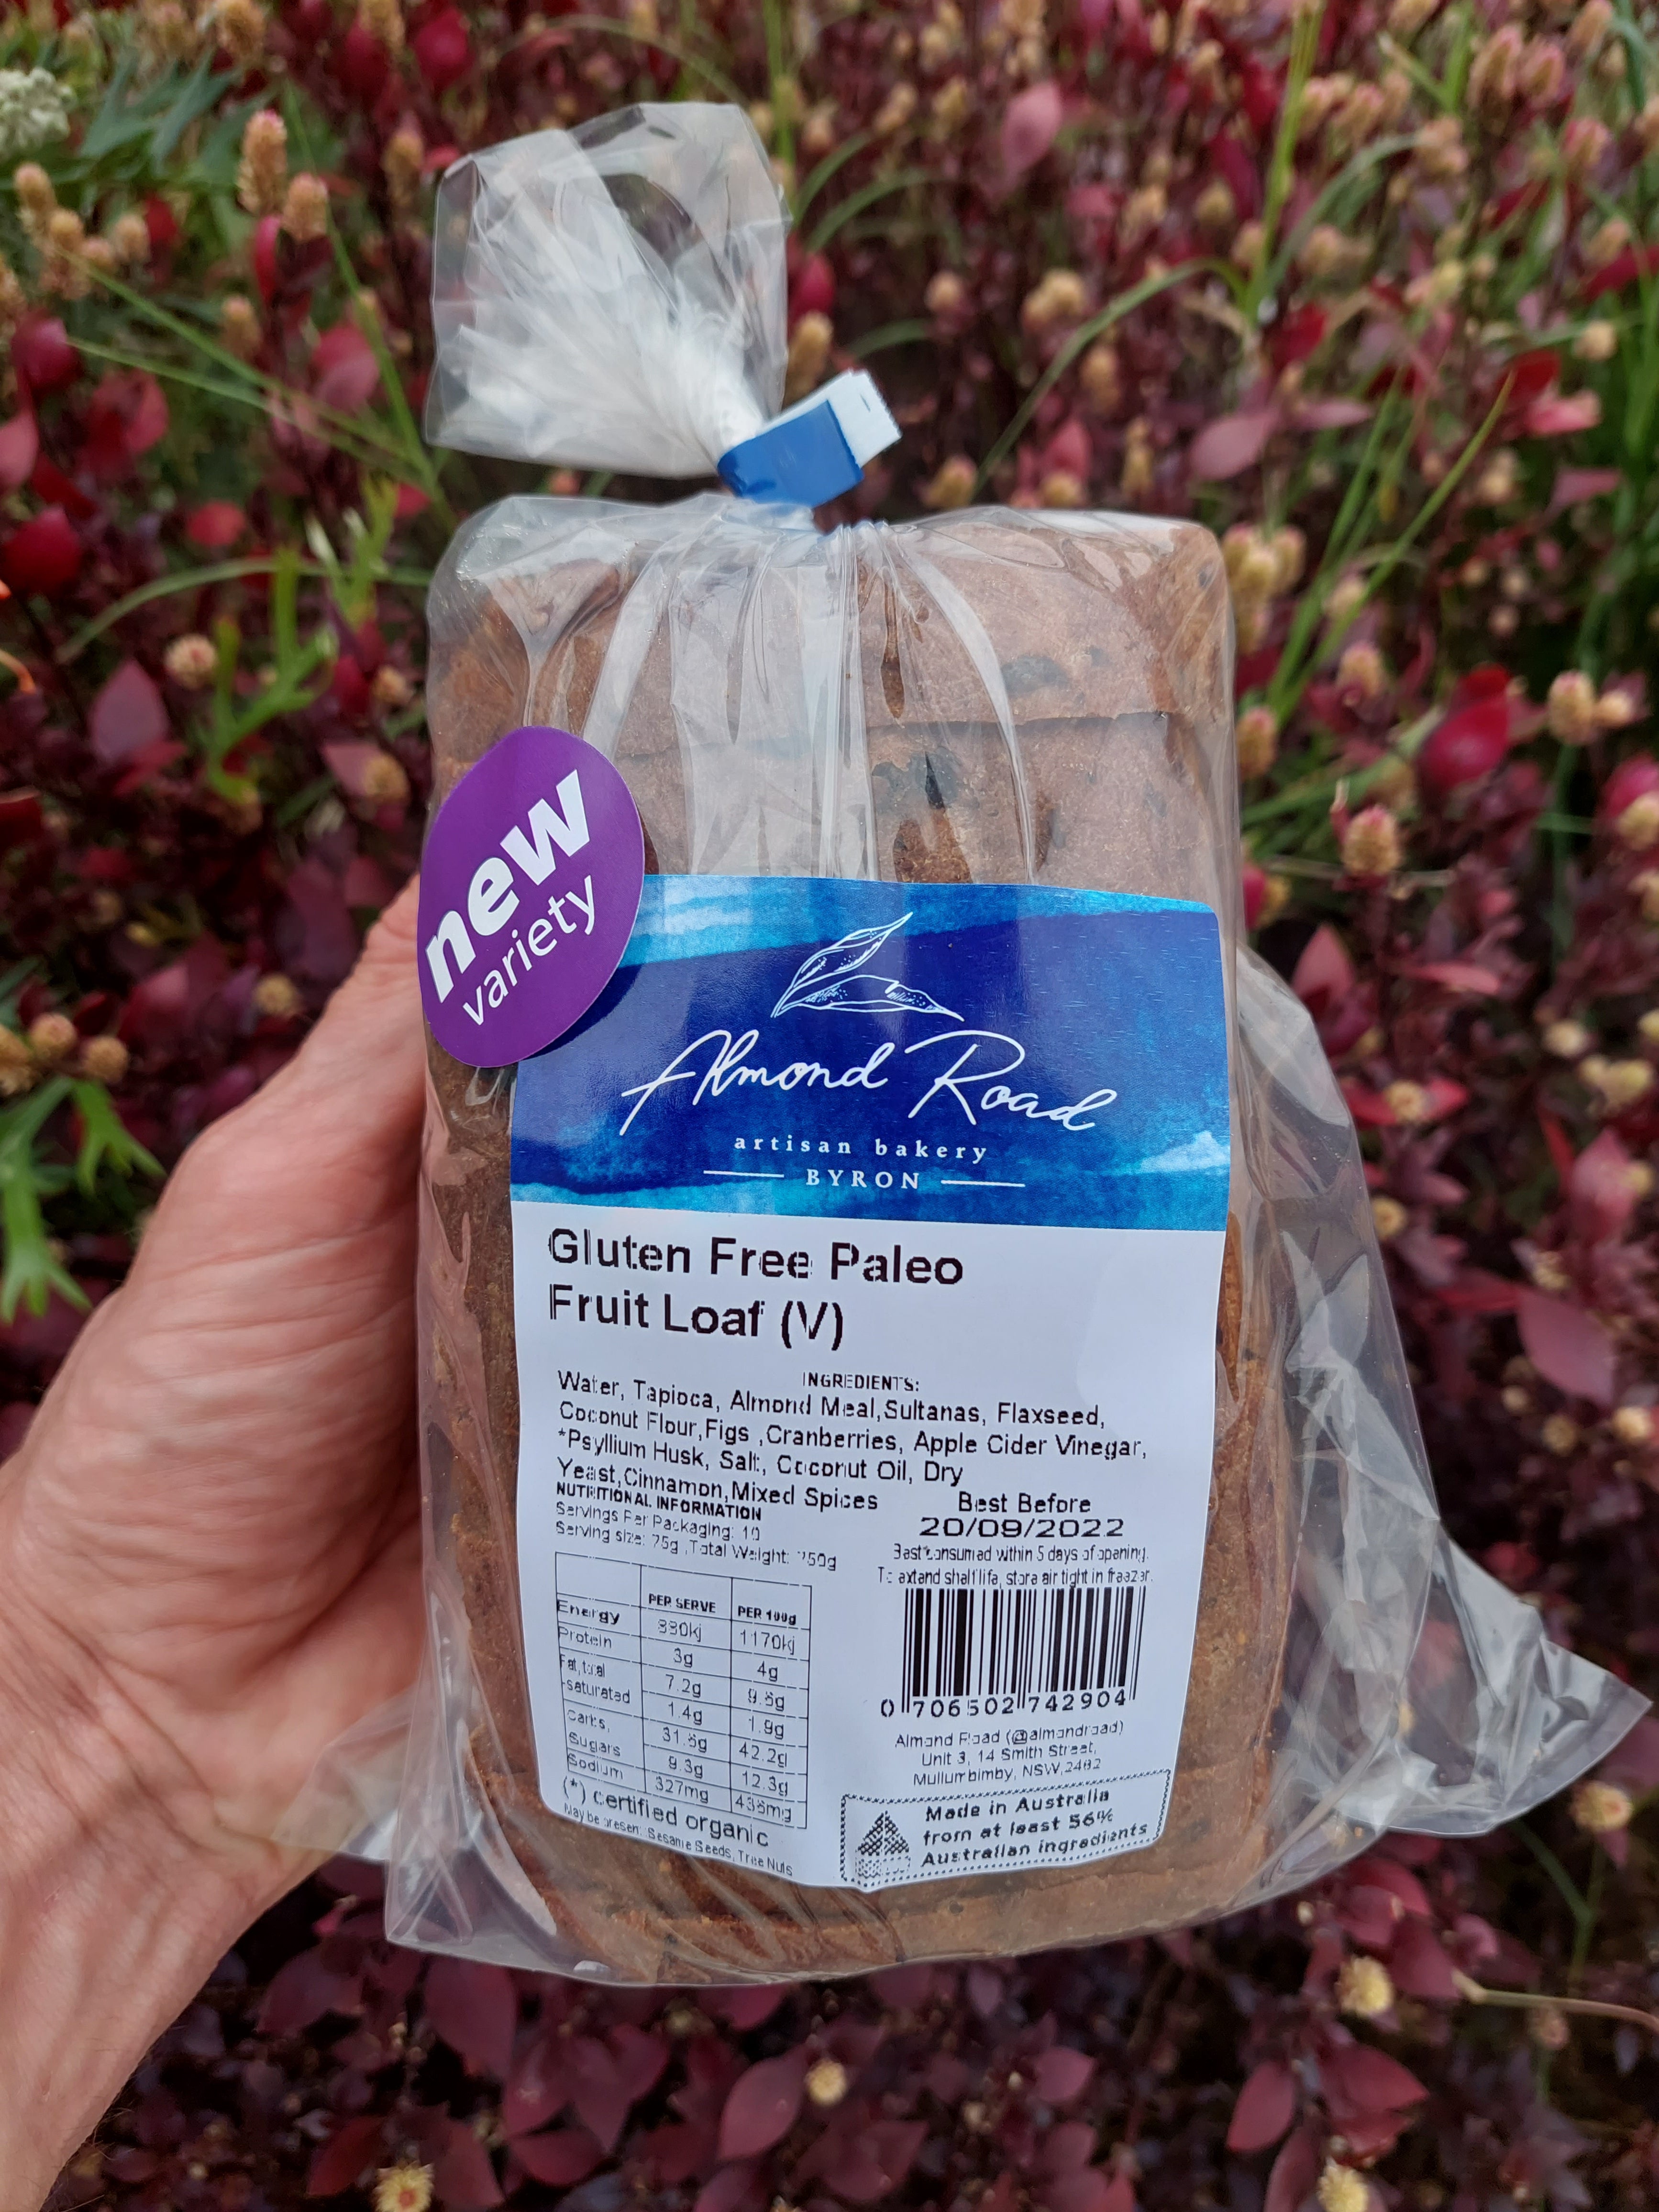 Almond Road's Gluten Free Paleo Fruit Loaf (V)